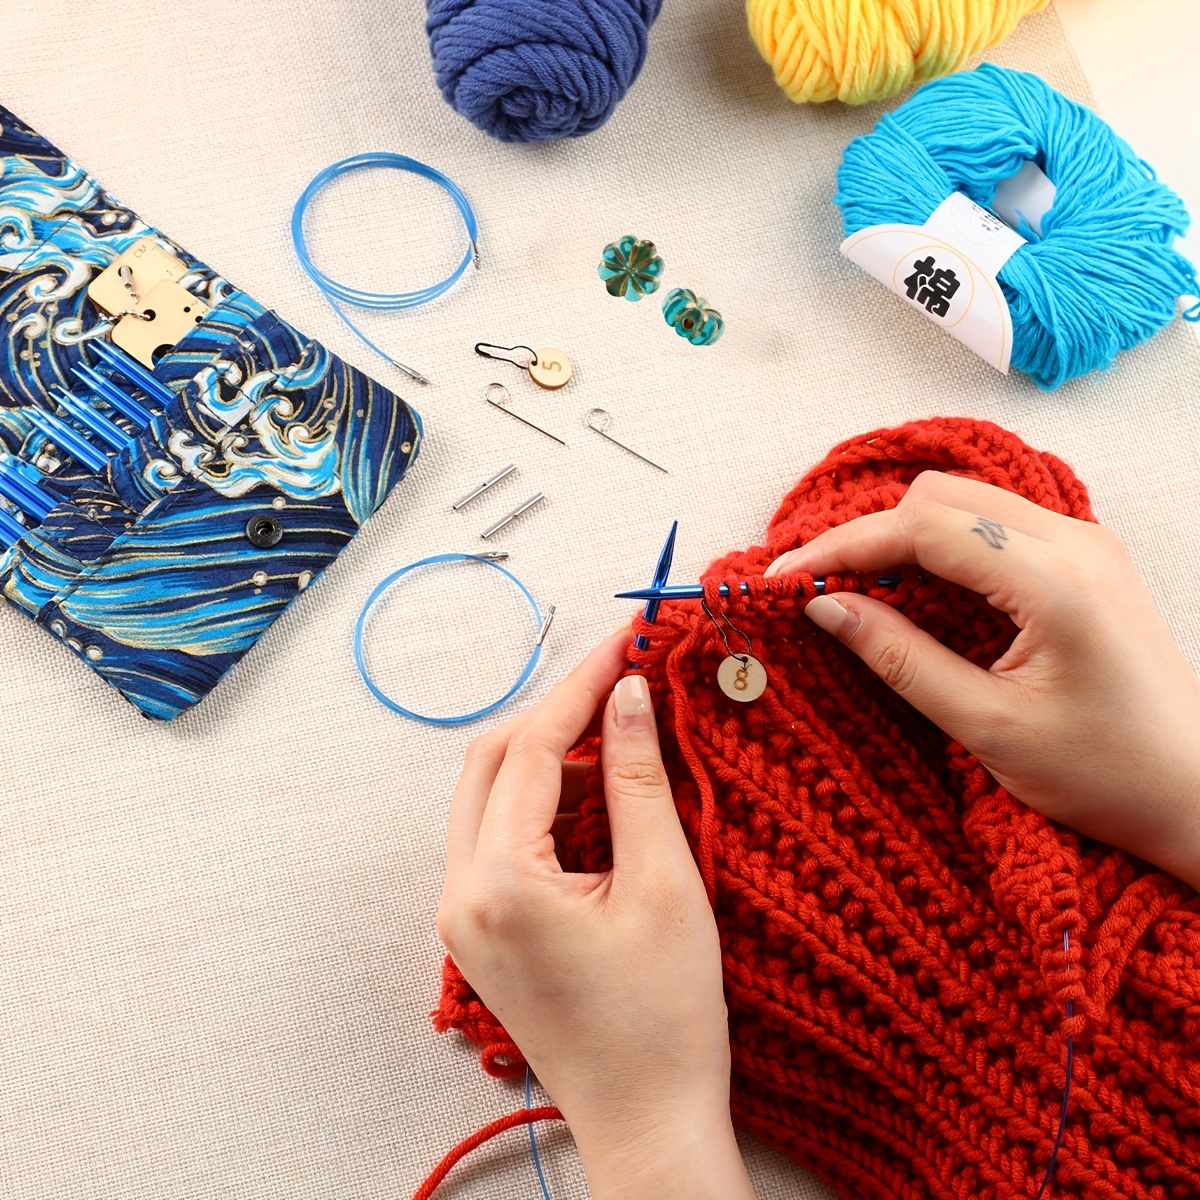 Needlework DIY Crafts Knitting Needles Circular Knitting Needles